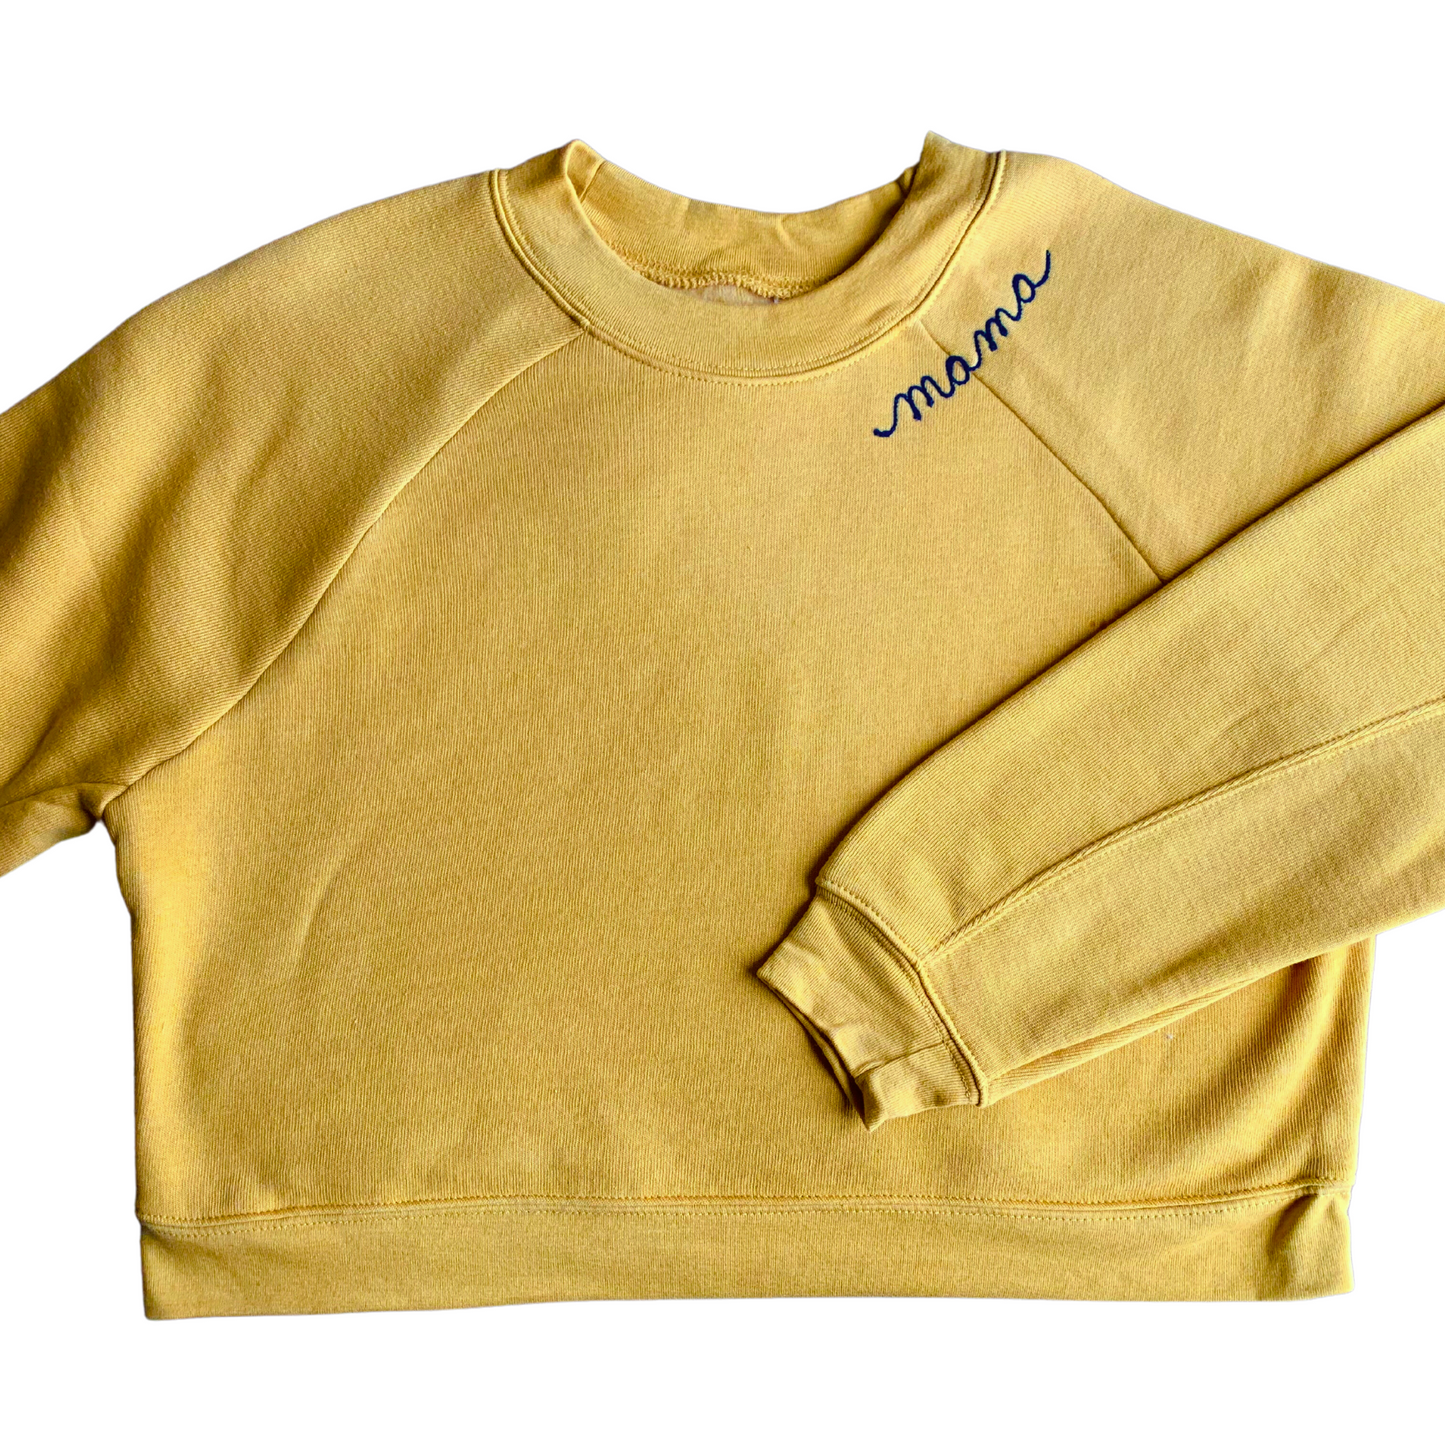 The Women's Cropped Chainstitch Sweatshirt - Mustard